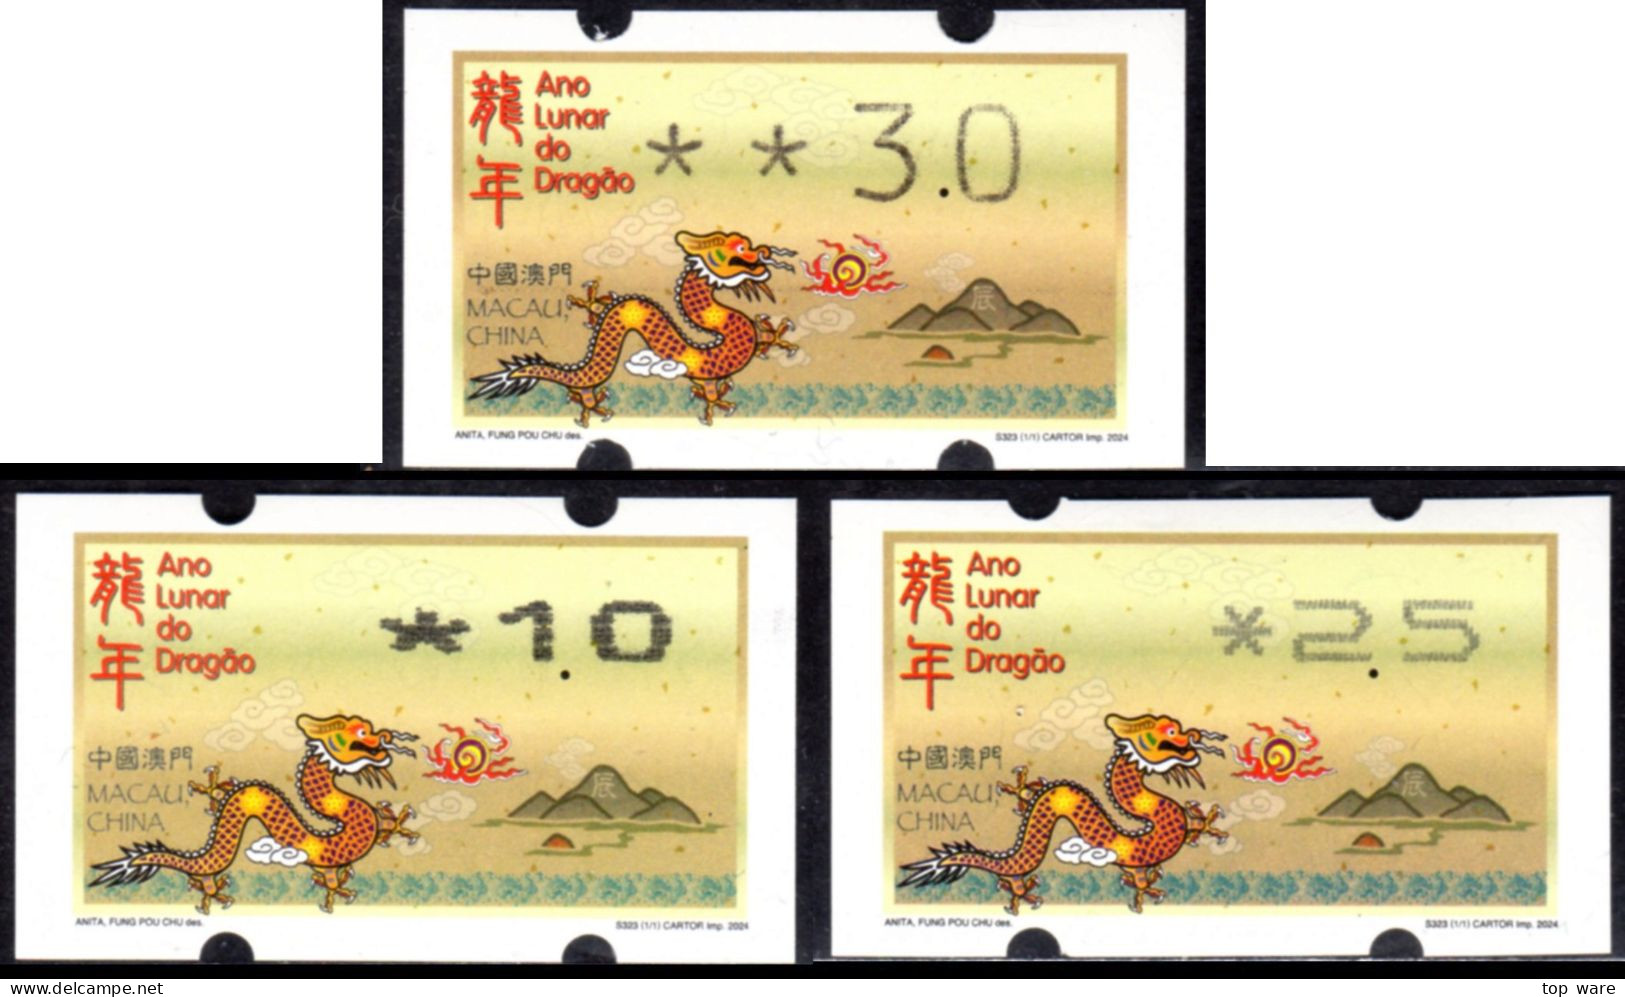 2024 China Macao Macau ATM Stamps L'année Du Dragon / Tous Types D'imprimantes Klussendorf Nagler Newvision - Distributors